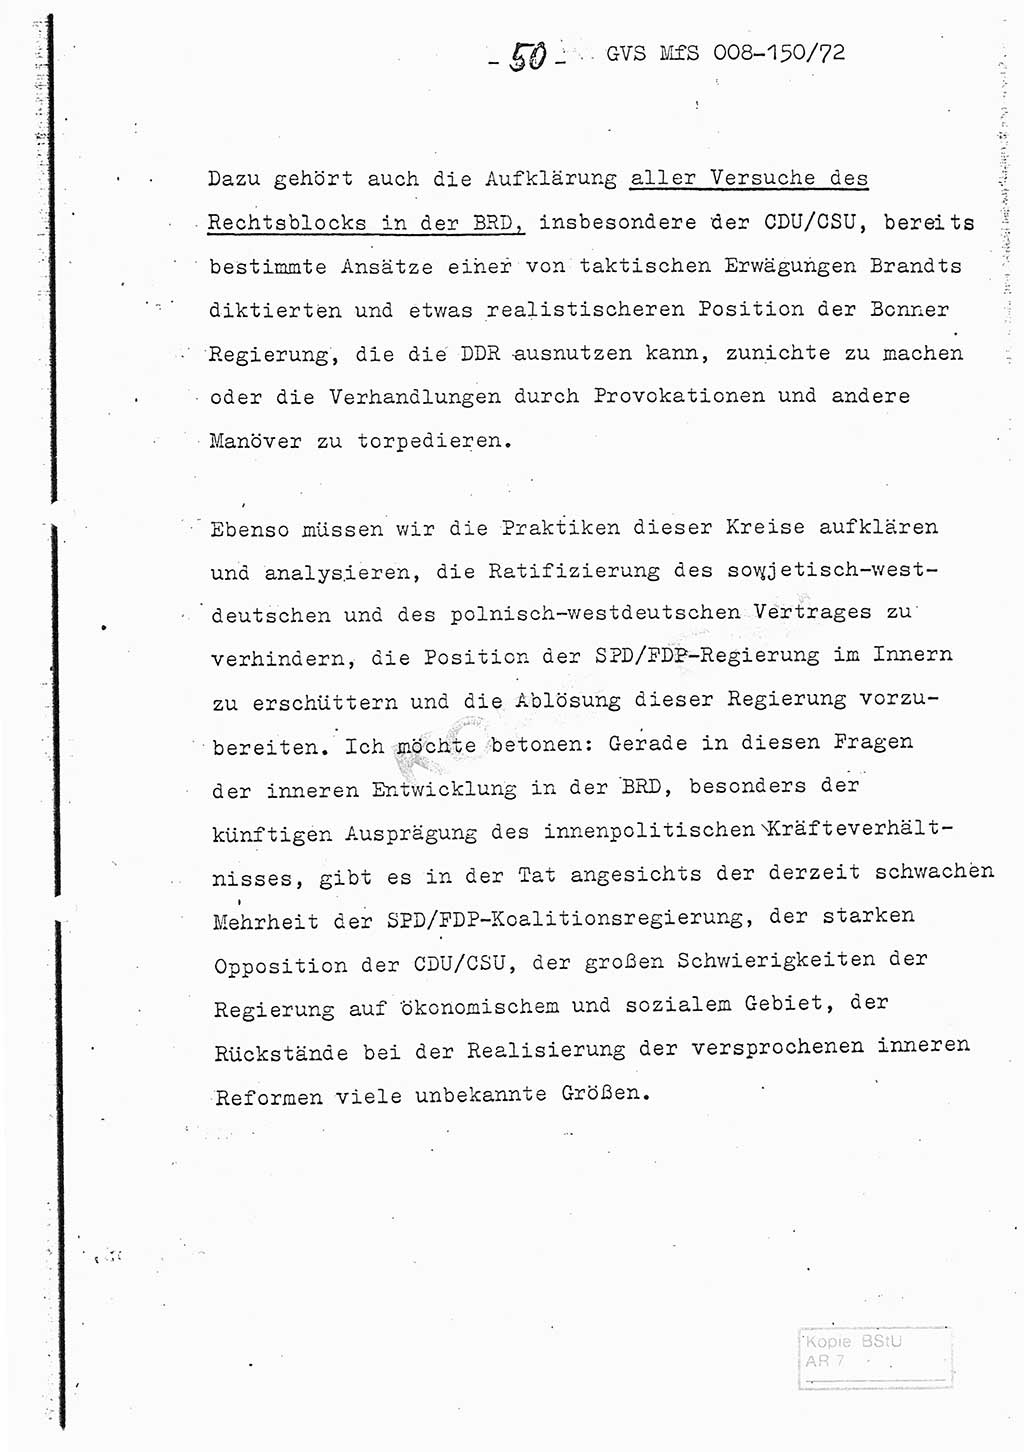 Referat (Entwurf) des Genossen Minister (Generaloberst Erich Mielke) auf der Dienstkonferenz 1972, Ministerium für Staatssicherheit (MfS) [Deutsche Demokratische Republik (DDR)], Der Minister, Geheime Verschlußsache (GVS) 008-150/72, Berlin 25.2.1972, Seite 50 (Ref. Entw. DK MfS DDR Min. GVS 008-150/72 1972, S. 50)